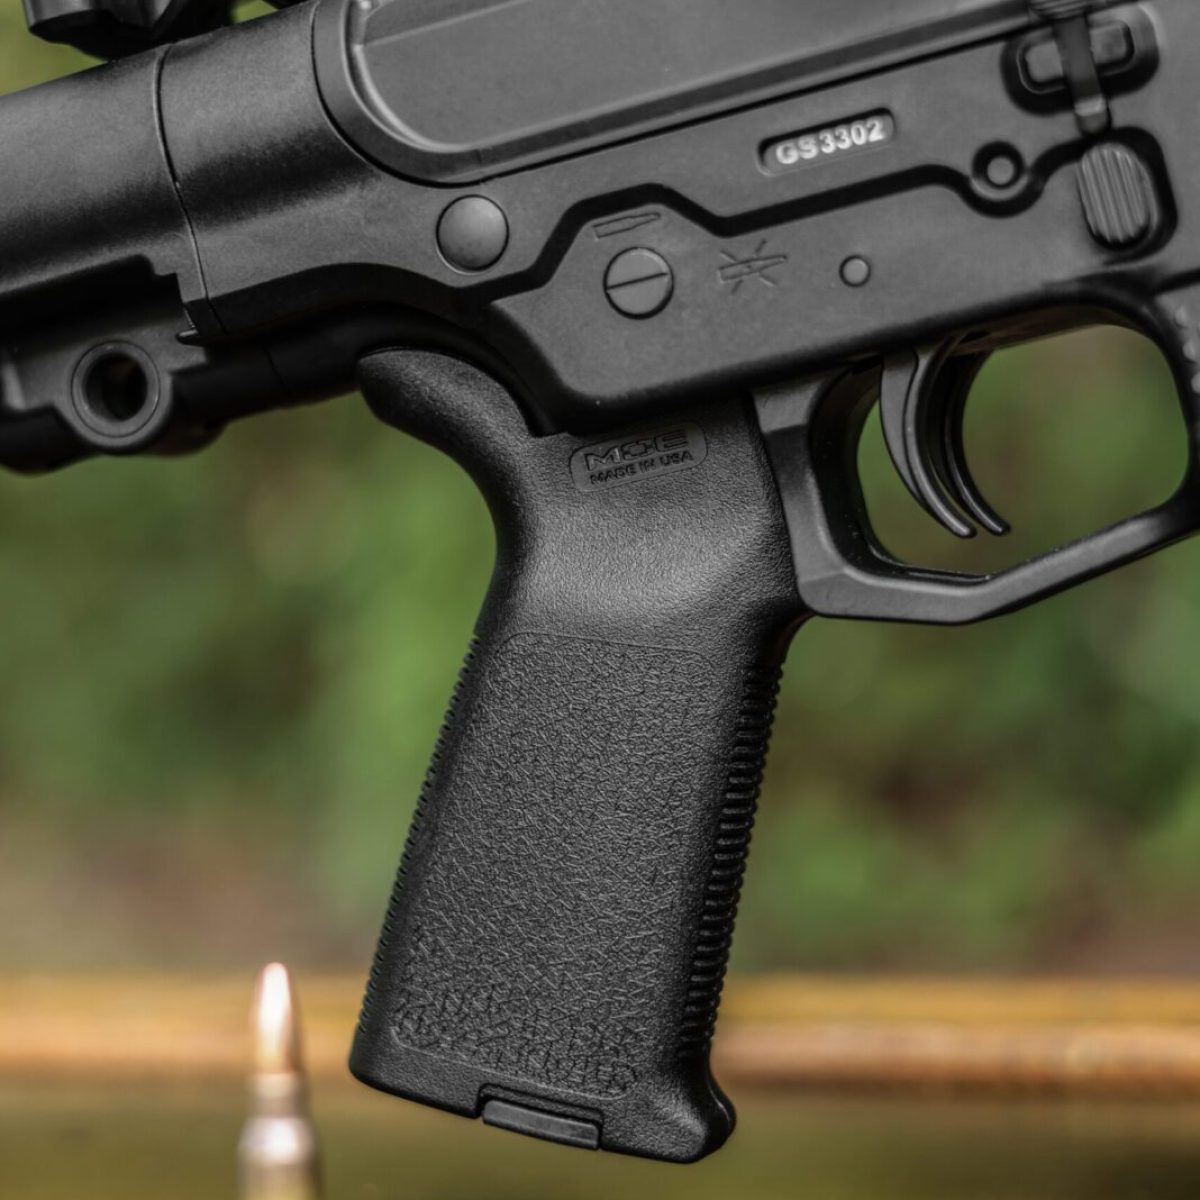 DBR Snake pistol grip with 5.56 caliber ammunition